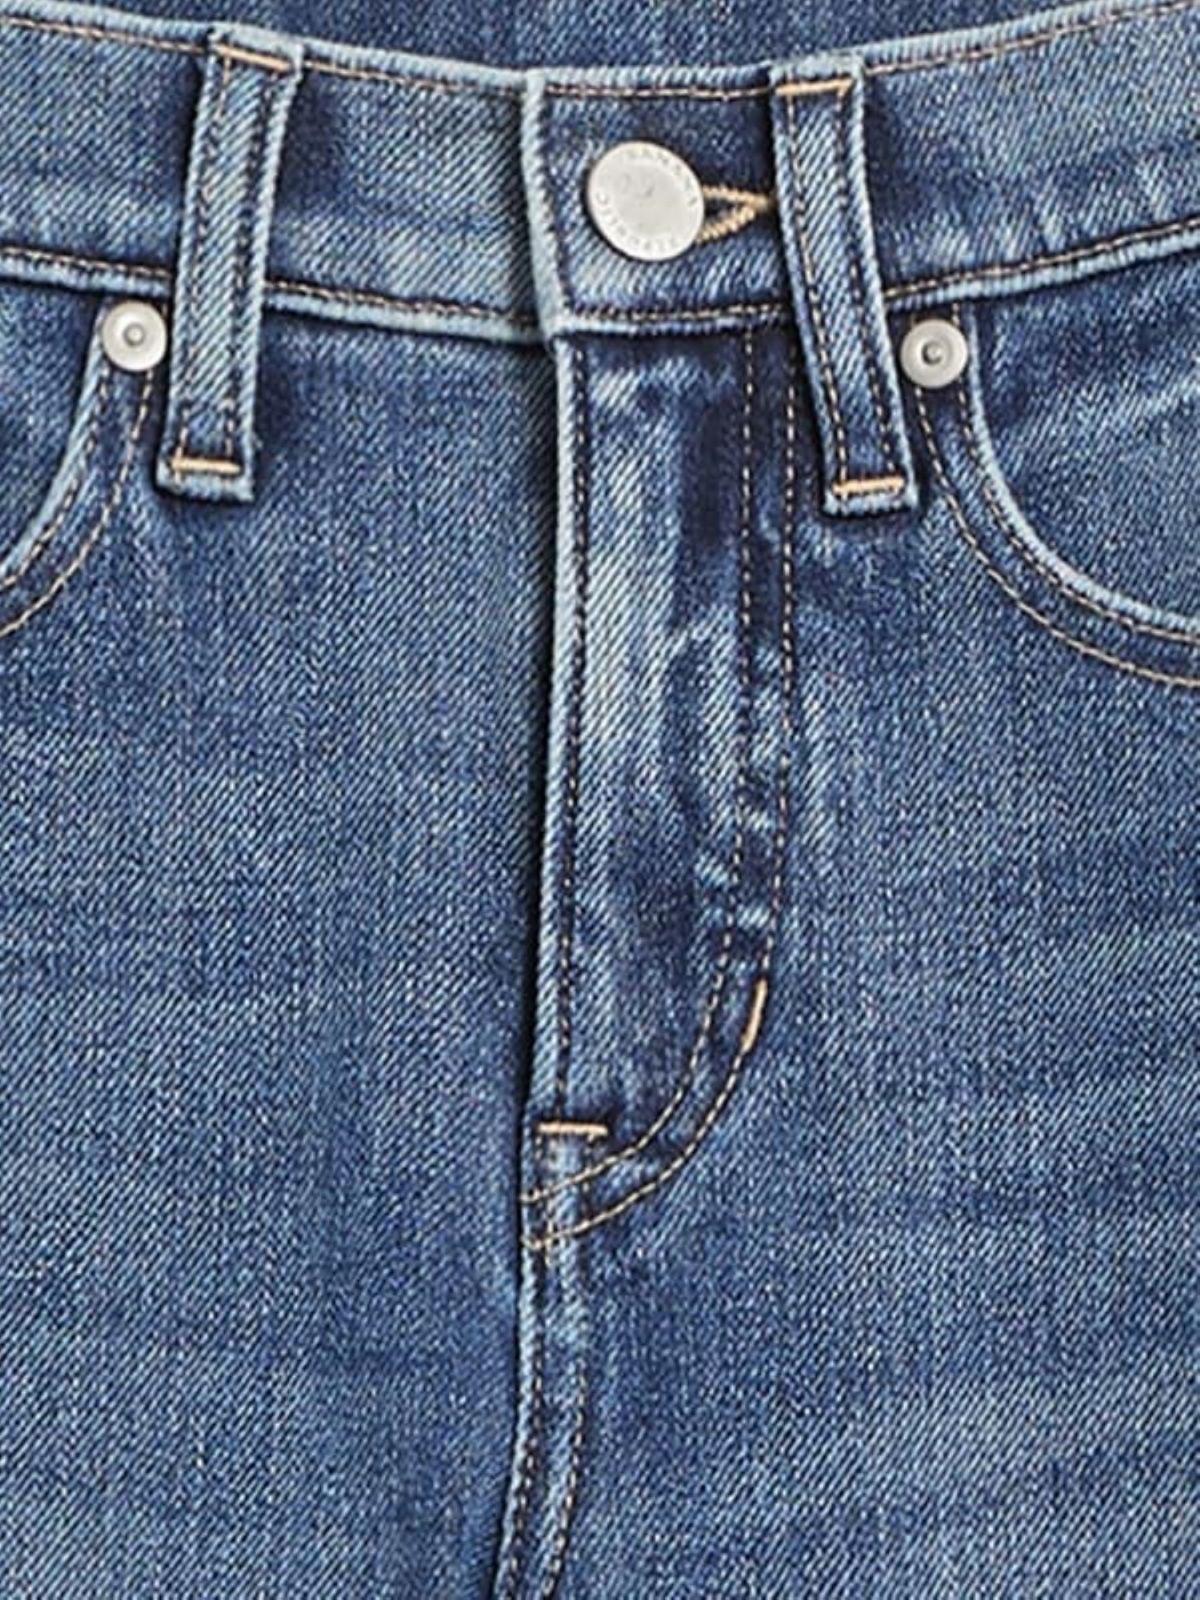  ג'ינס סלים בגזרה גבוהה של BANANA REPUBLIC